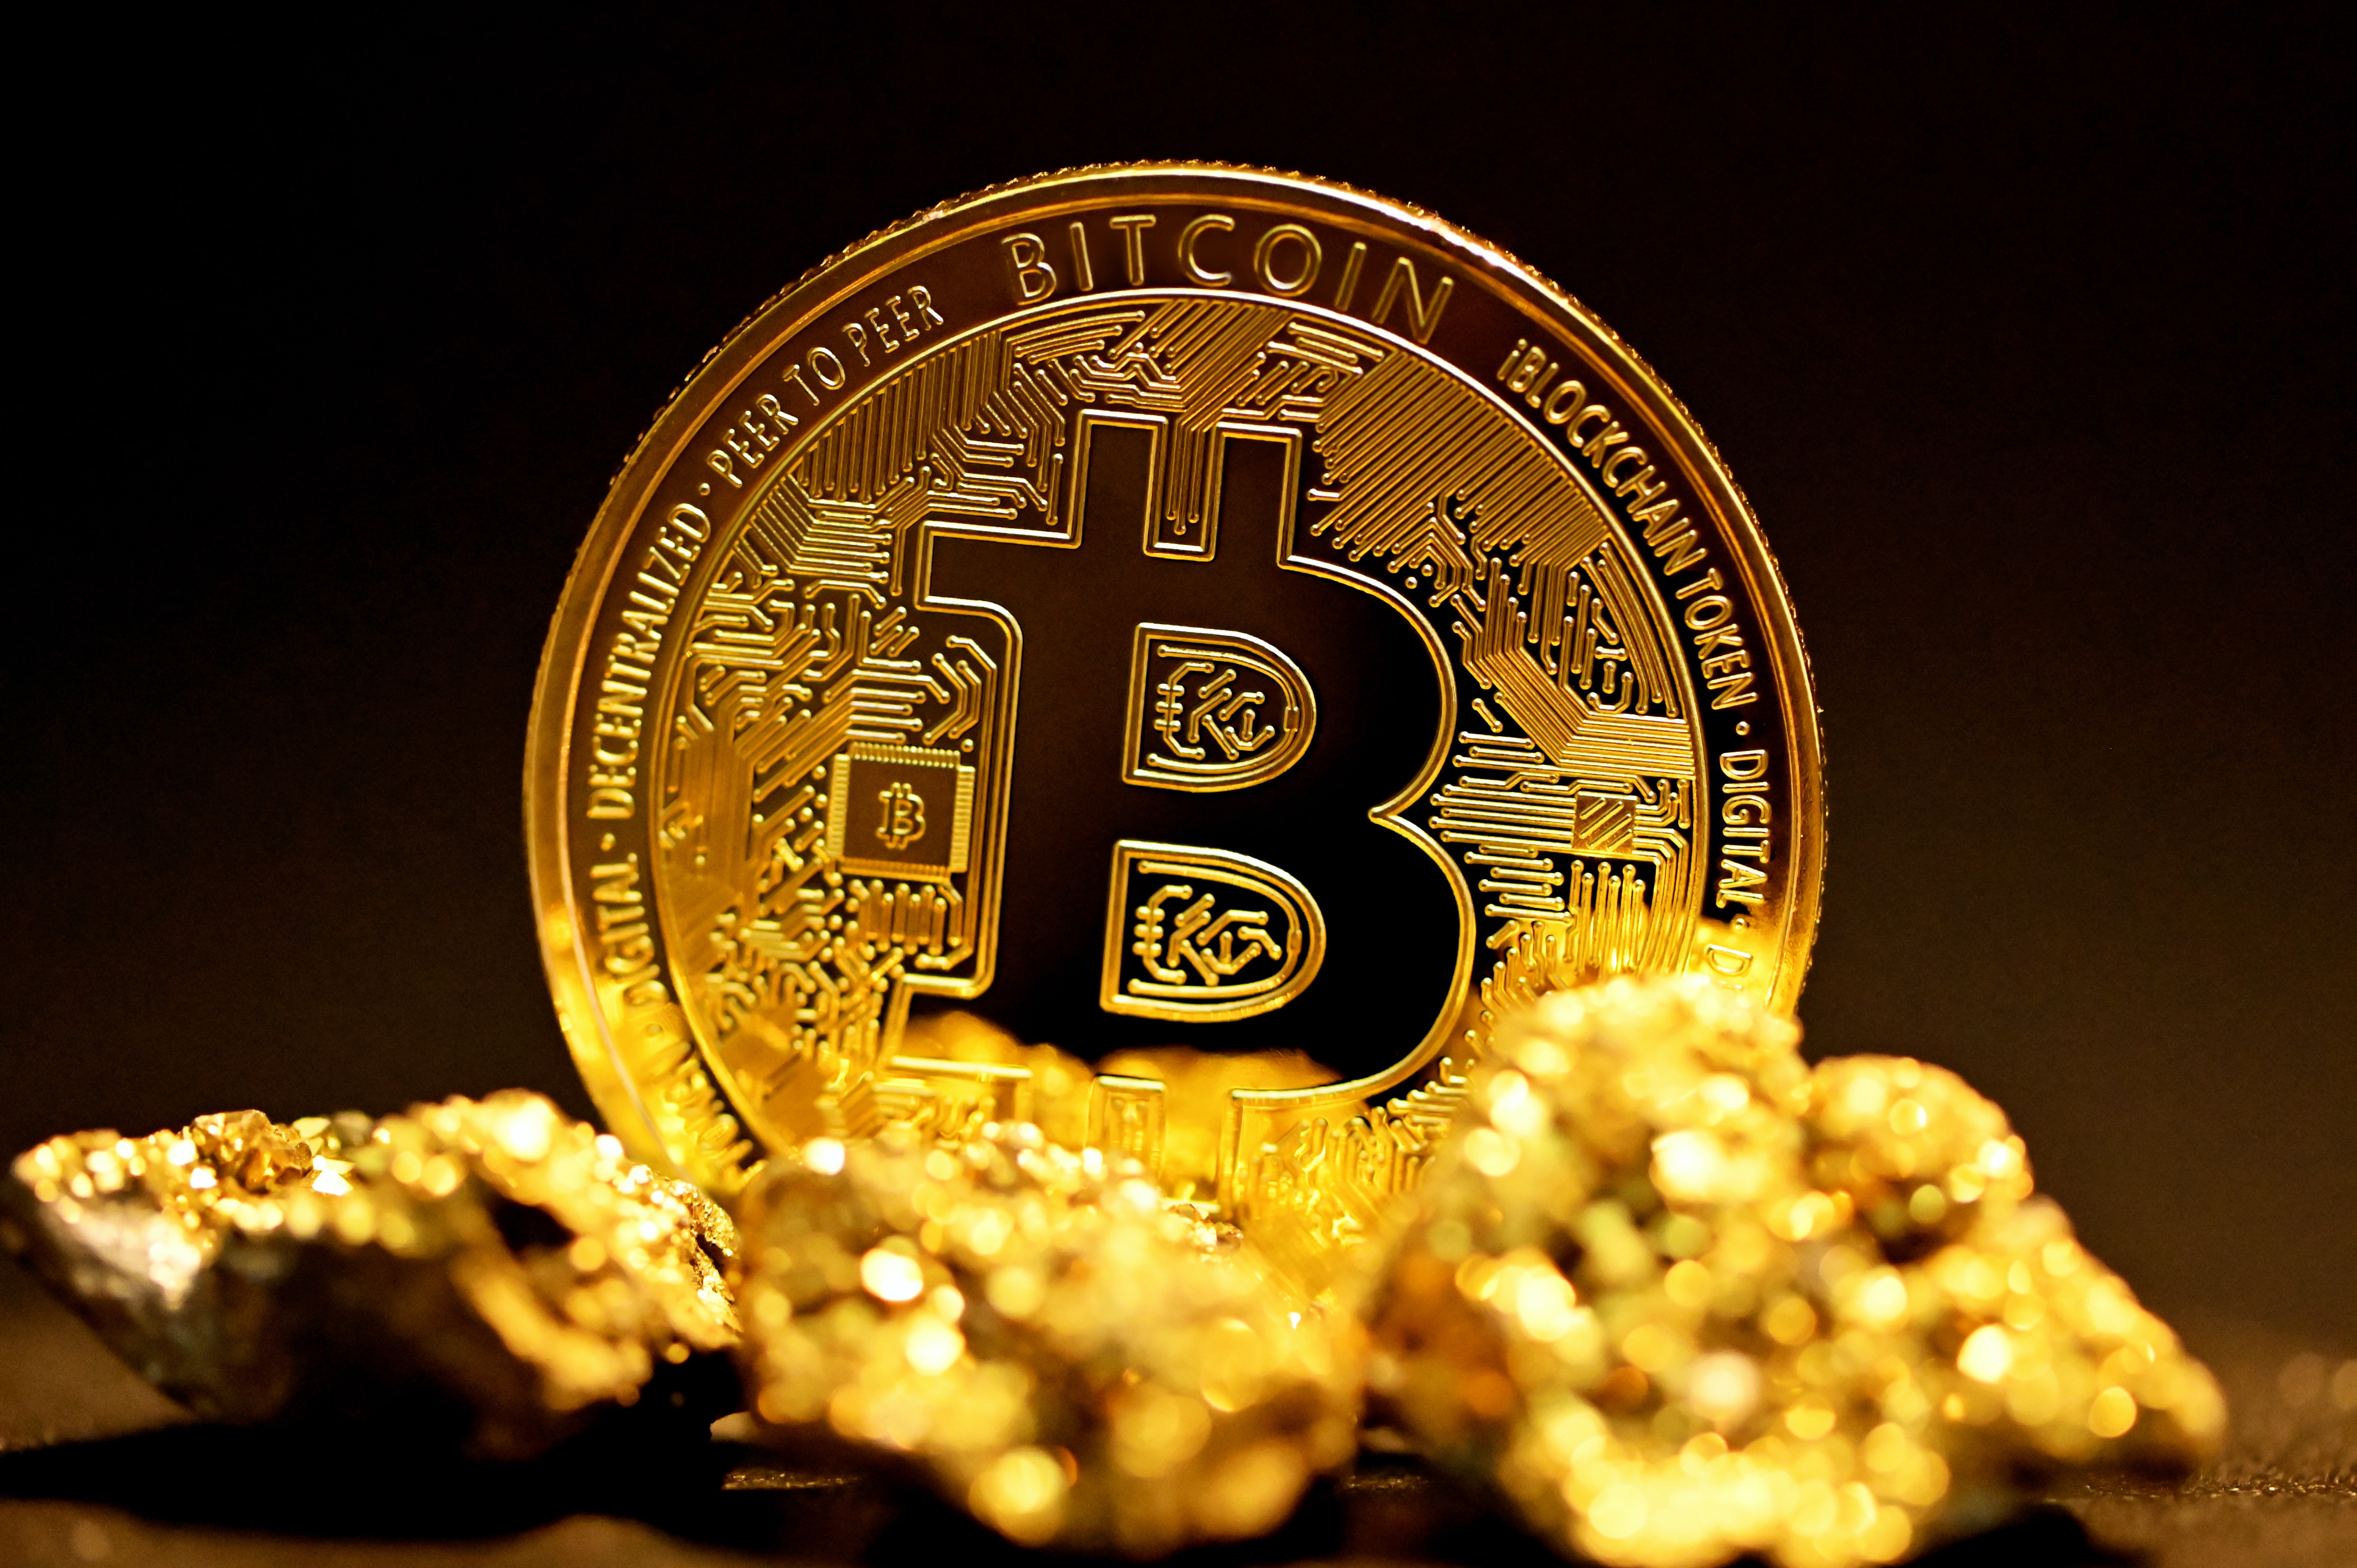 L'adoption par le Salvador du bitcoin comme monnaie officielle tourne à la catastrophe économique